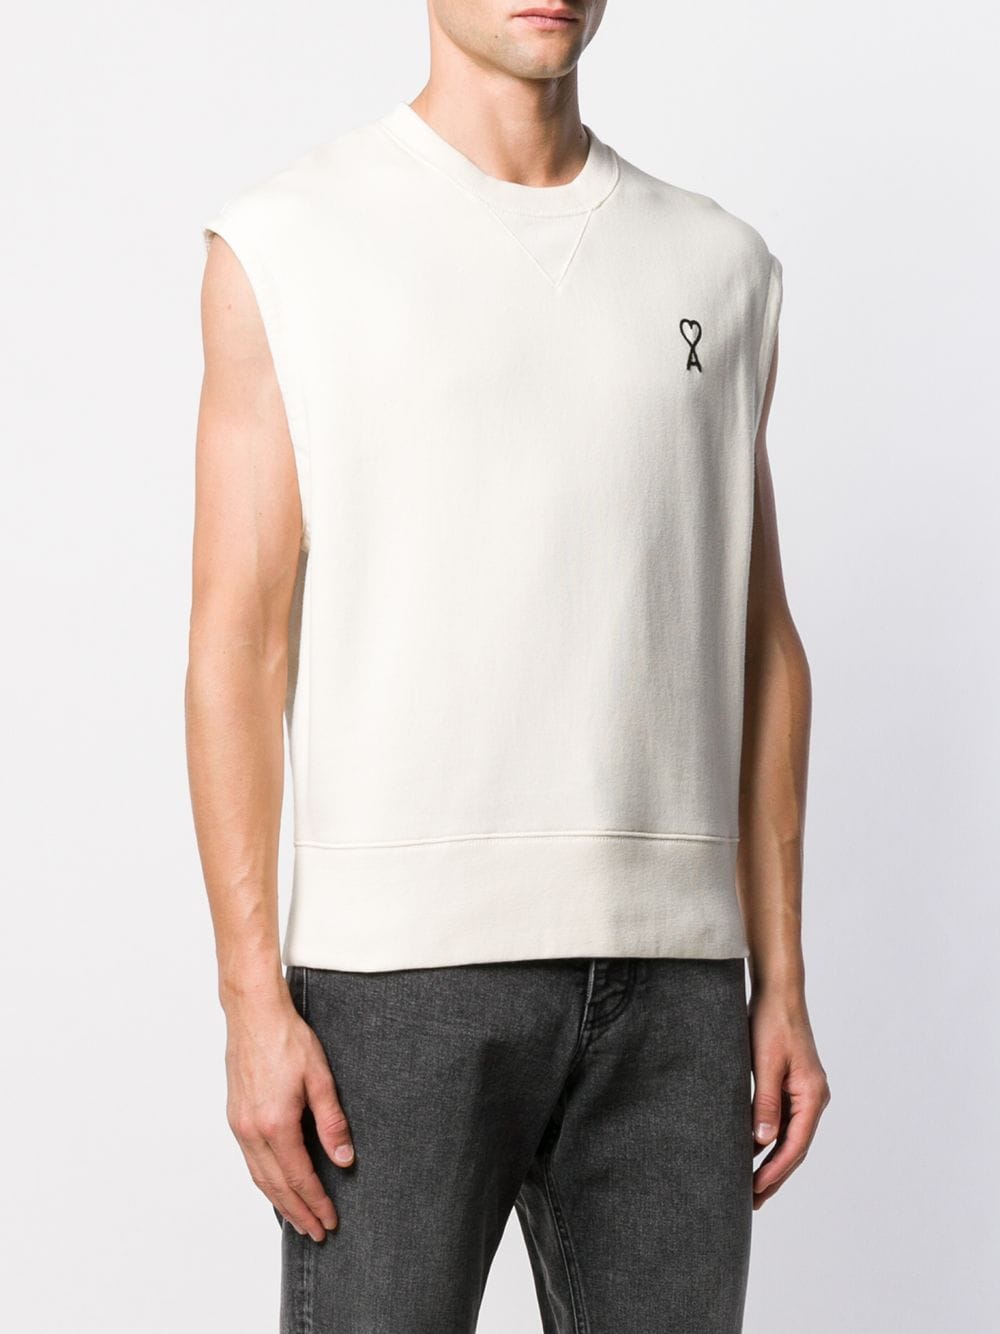 фото Ami свитер без рукавов с логотипом